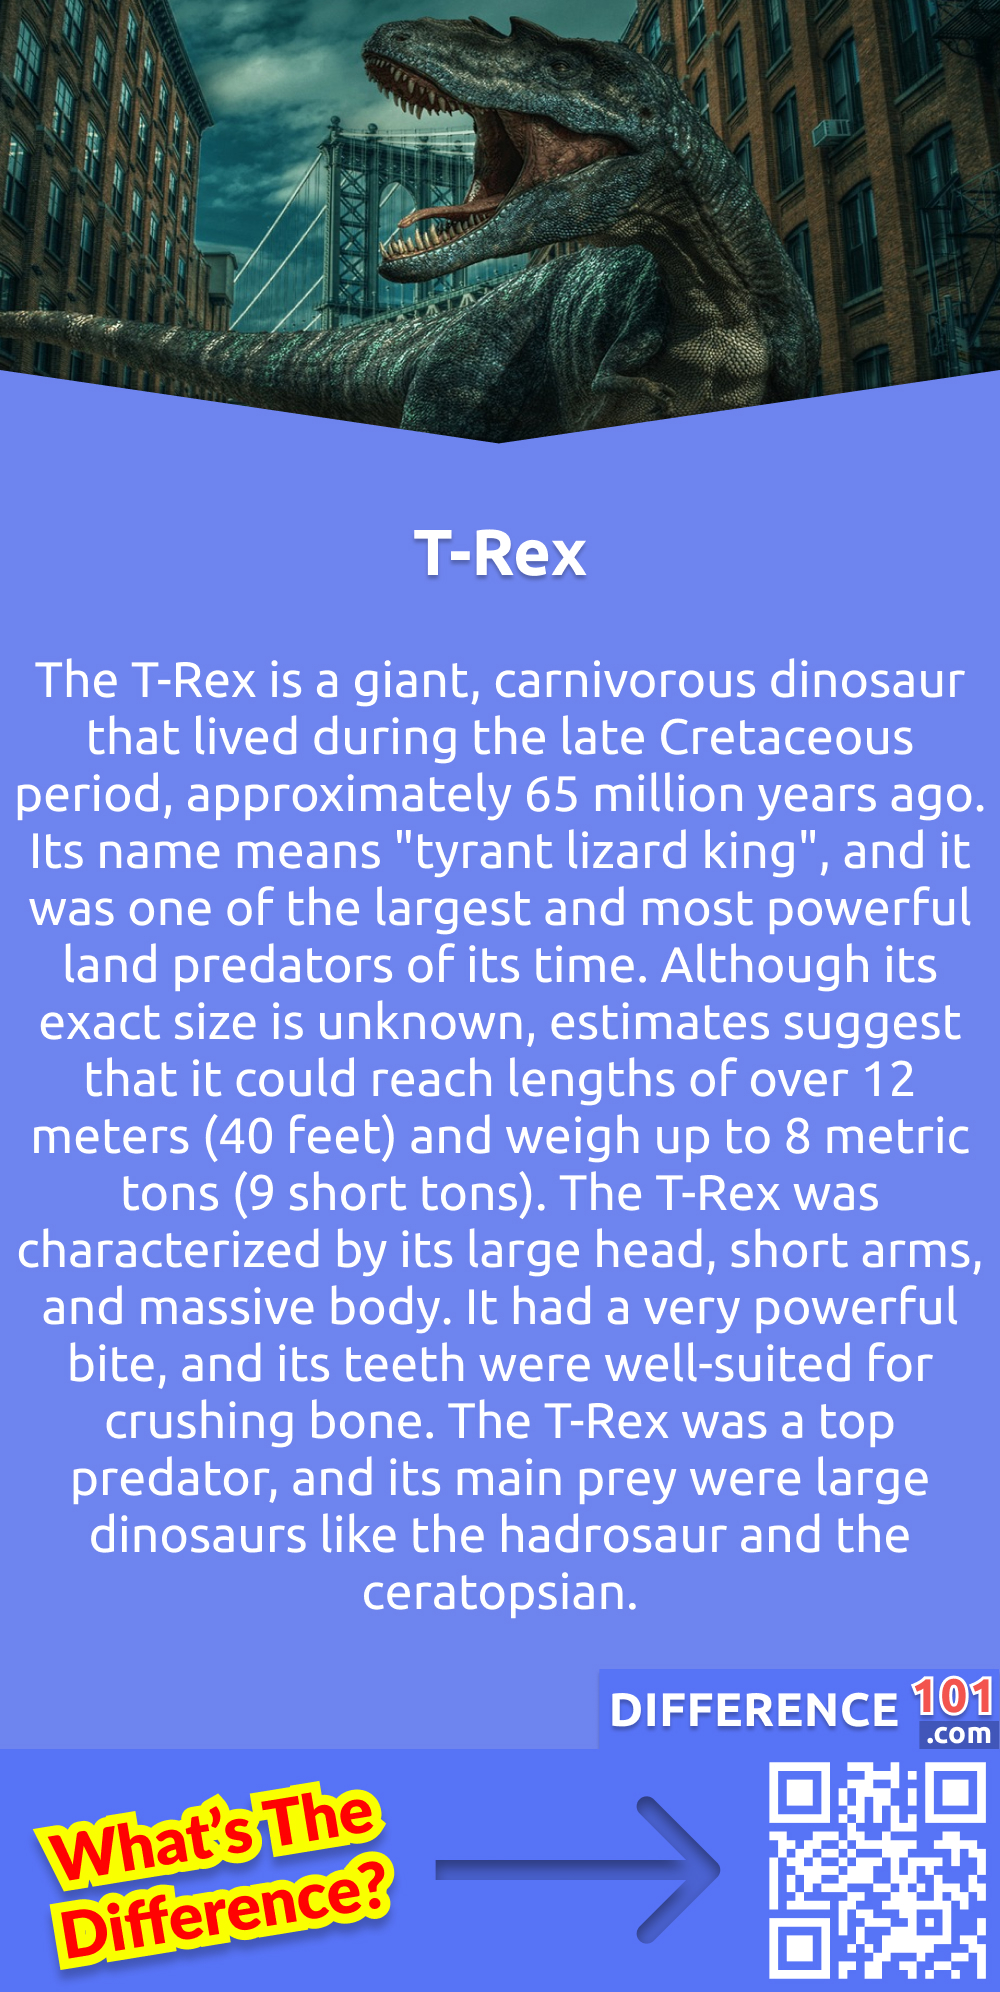 Qu'est-ce que le T-Rex ? Le T-Rex est un dinosaure géant et carnivore qui a vécu à la fin du Crétacé, il y a environ 65 millions d'années. Son nom signifie u0022tyrant lizard kingu0022, et il était l'un des plus grands et des plus puissants prédateurs terrestres de son époque. Bien que sa taille exacte soit inconnue, on estime qu'il pouvait atteindre une longueur de plus de 12 mètres (40 pieds) et peser jusqu'à 8 tonnes métriques (9 tonnes courtes). Le T-Rex était caractérisé par sa grosse tête, ses bras courts et son corps massif. Il avait une morsure très puissante, et ses dents étaient bien adaptées pour broyer les os. Le T-Rex était un prédateur supérieur, et ses principales proies étaient de grands dinosaures comme l'hadrosaure et le cératopsien.